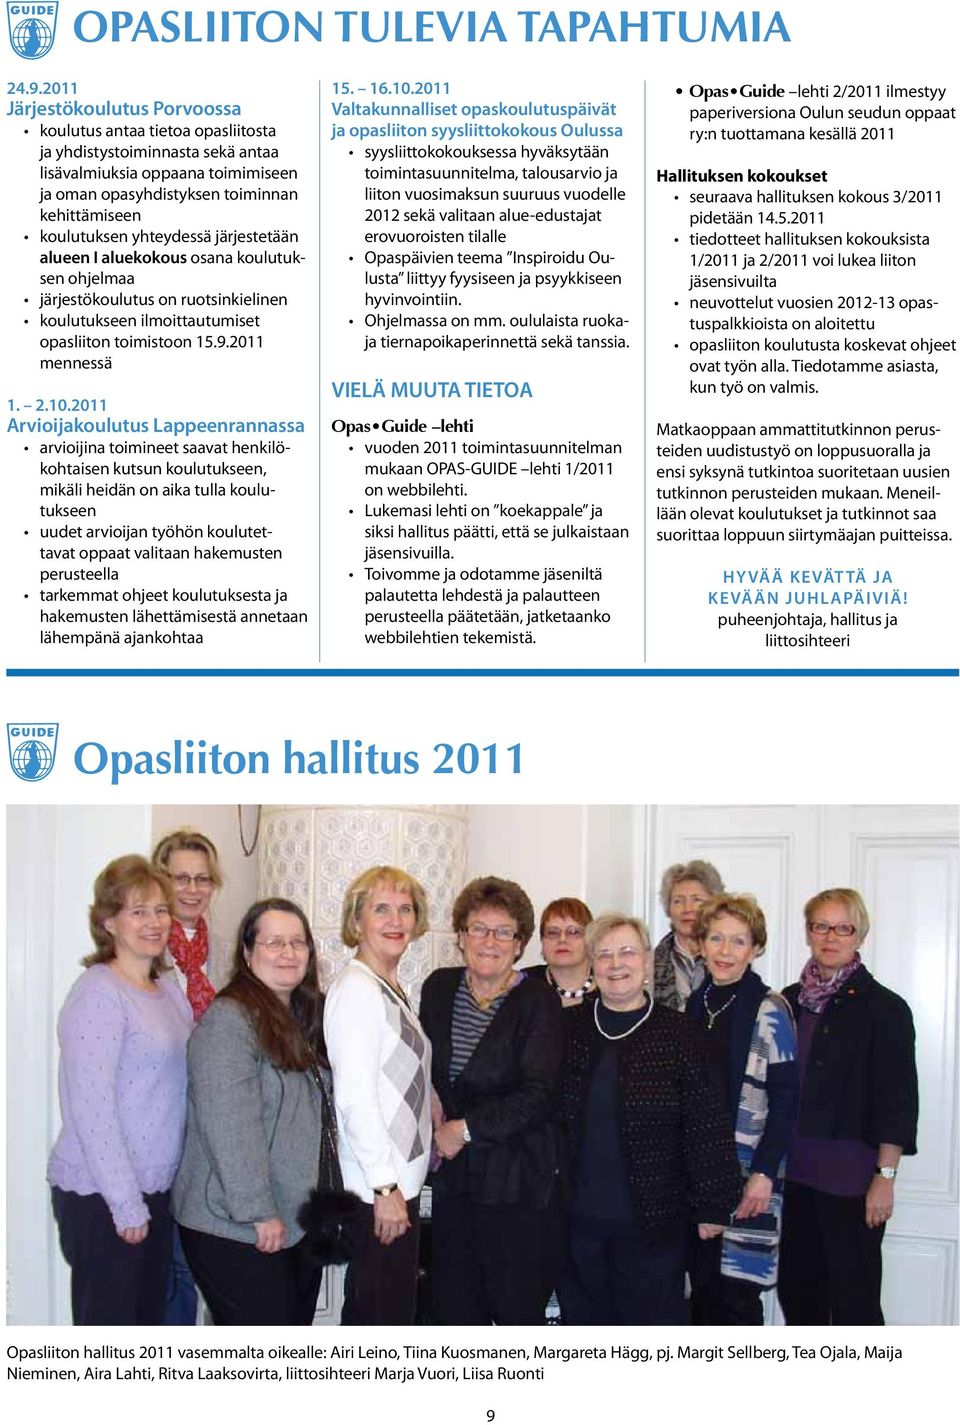 yhteydessä järjestetään alueen I aluekokous osana koulutuksen ohjelmaa järjestökoulutus on ruotsinkielinen koulutukseen ilmoittautumiset opasliiton toimistoon 15.9.2011 mennessä 1. 2.10.